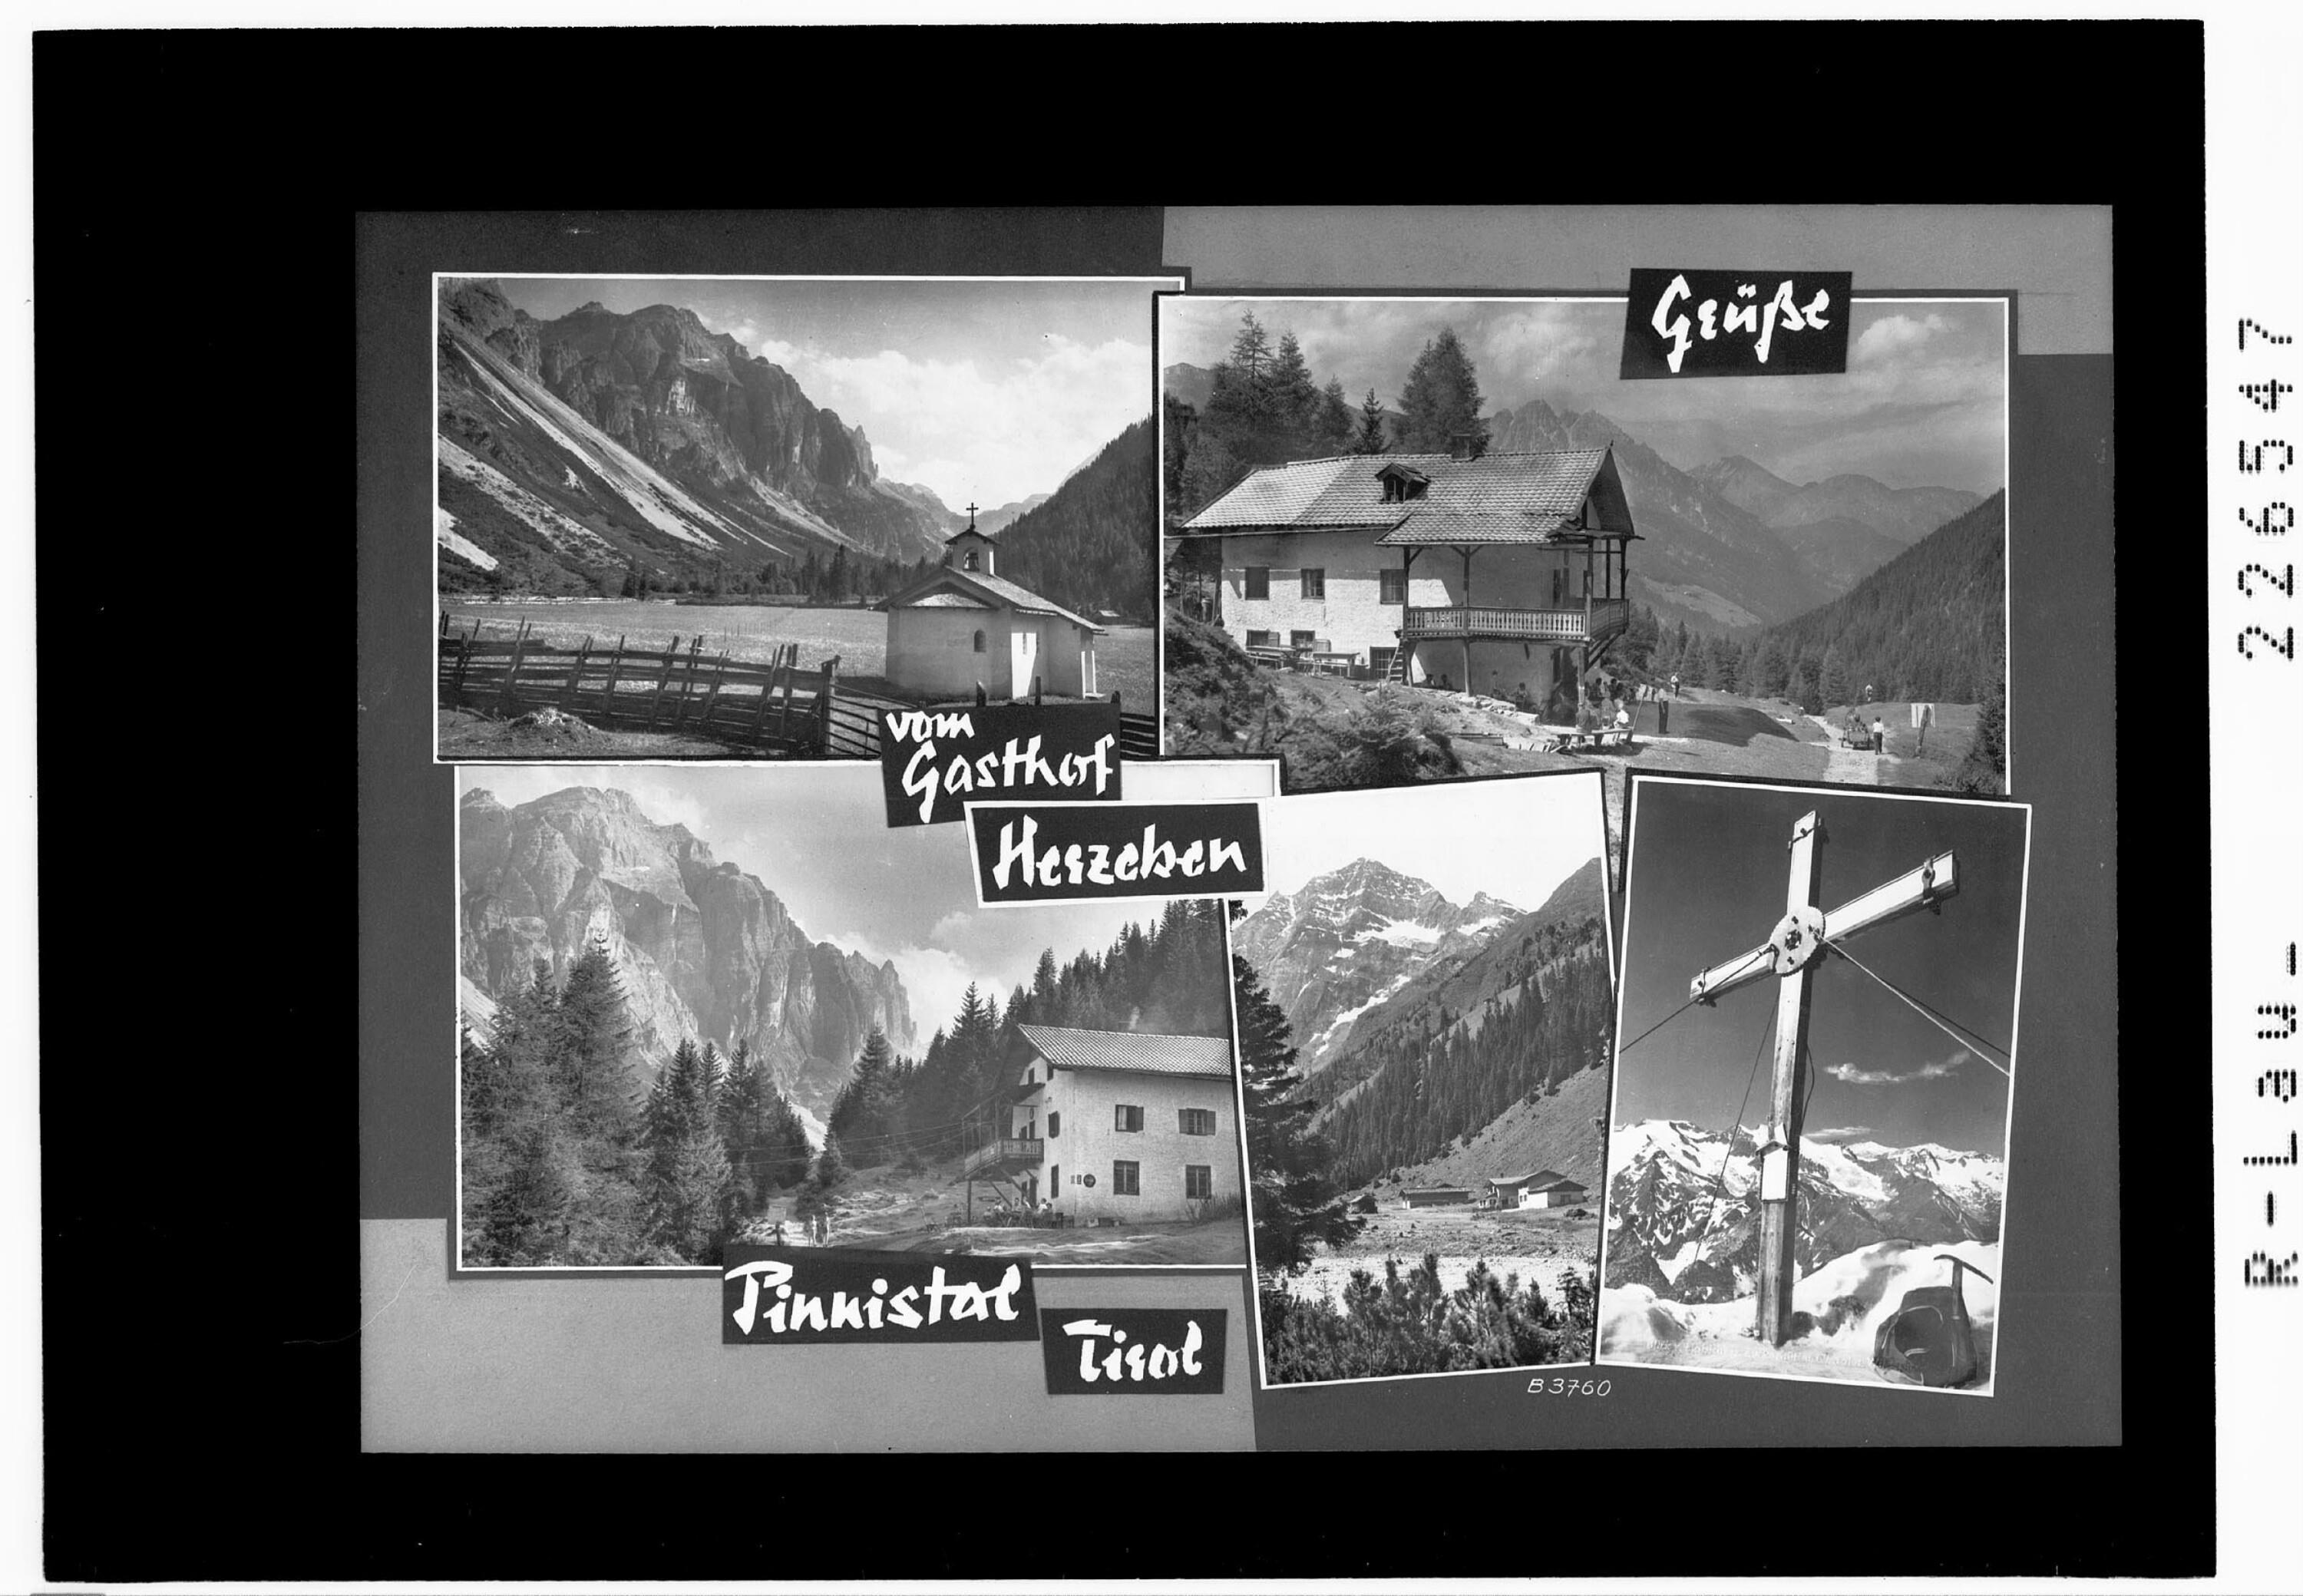 Grüsse vom Gasthof Herzeben im Pinnistal / Tirol></div>


    <hr>
    <div class=